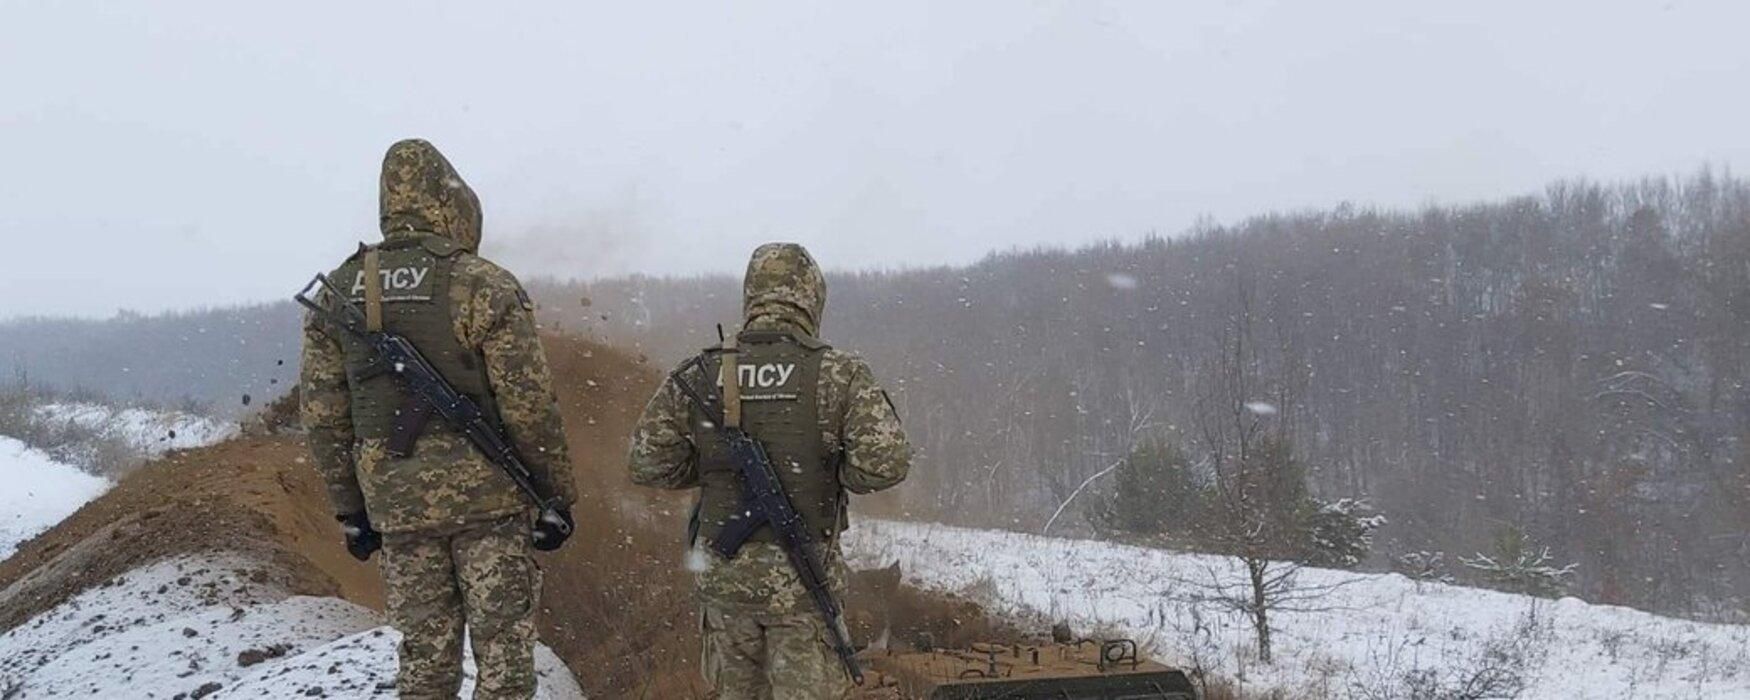 На Буковині шпиталізували прикордонника з вогнепальним пораненням - Україна новини - 24 Канал